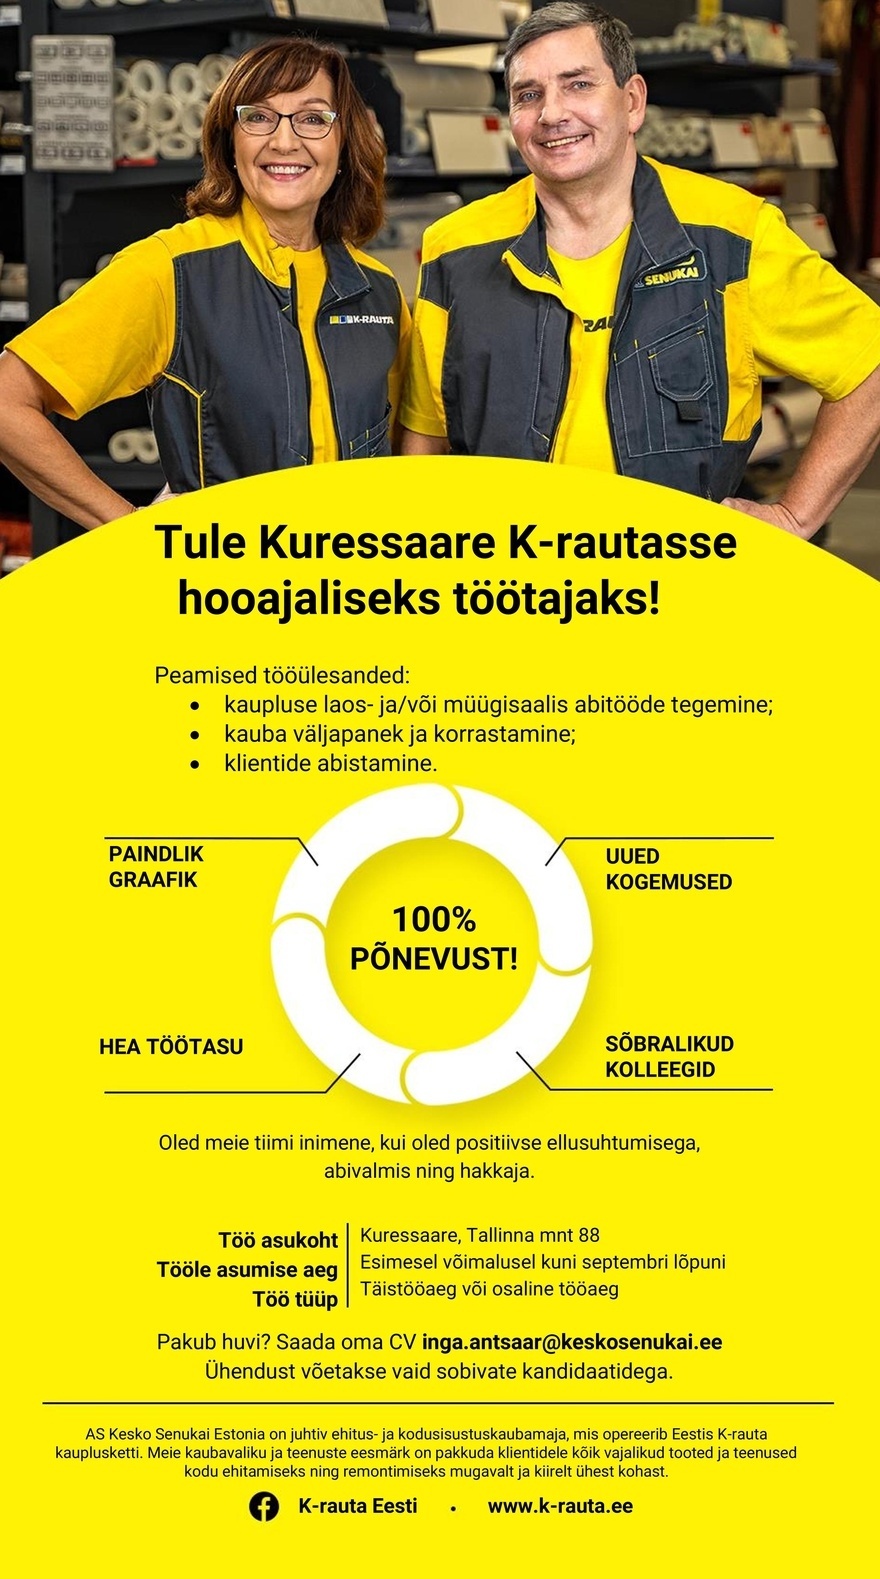 Kesko Senukai Estonia AS Otsime hooajalisi töötajaid Kuressaare K-rauta kauplusesse